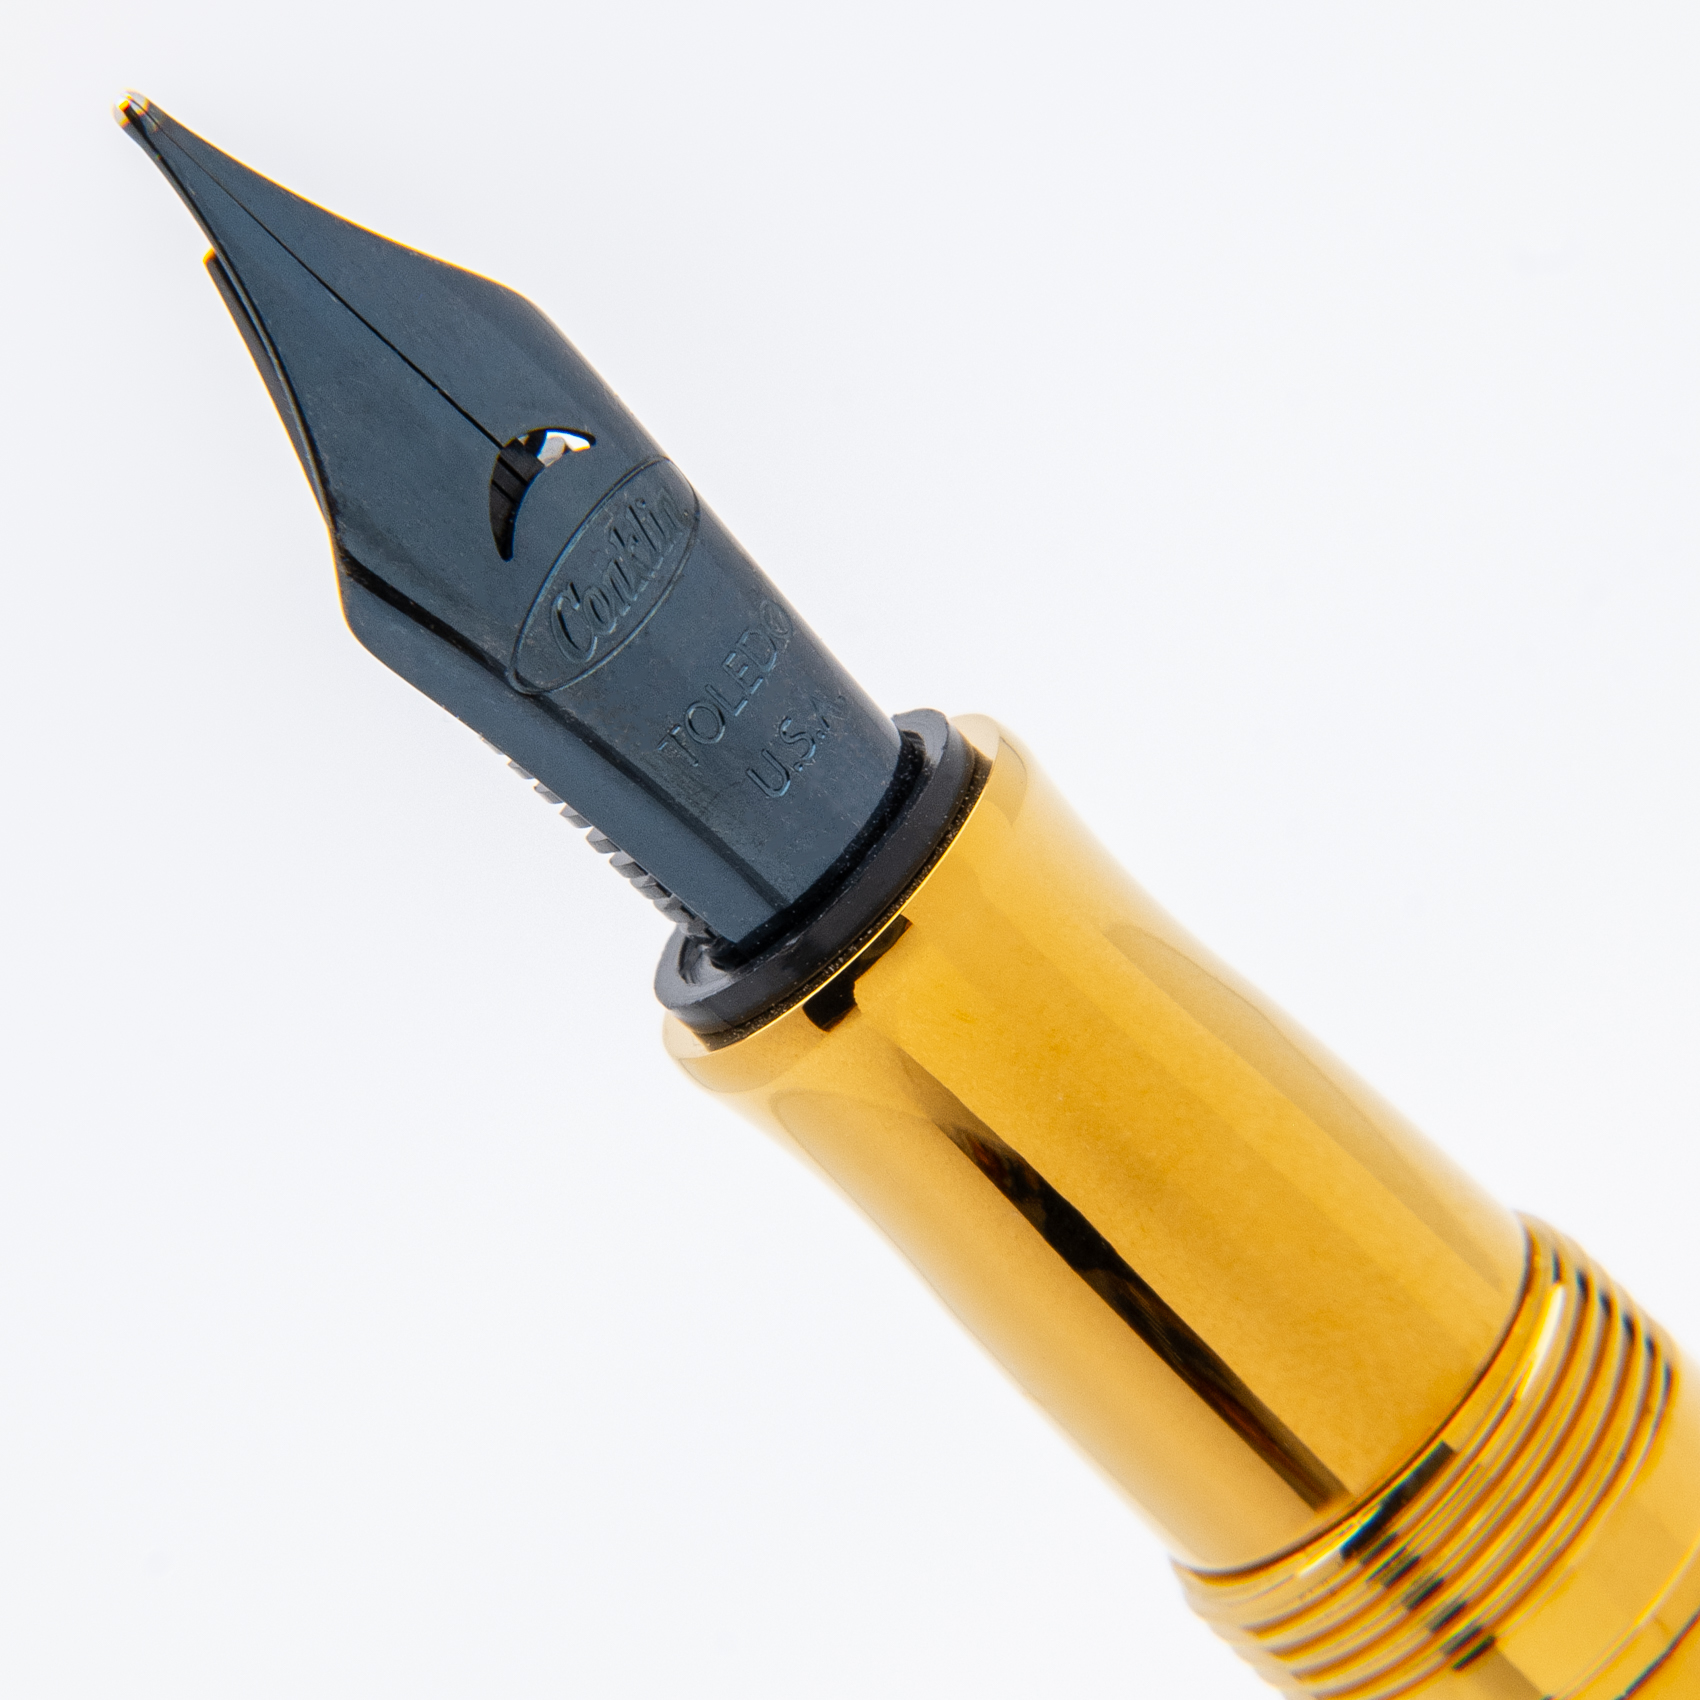 Conklin Duragraph Metal PVD Gold Fountain Pen